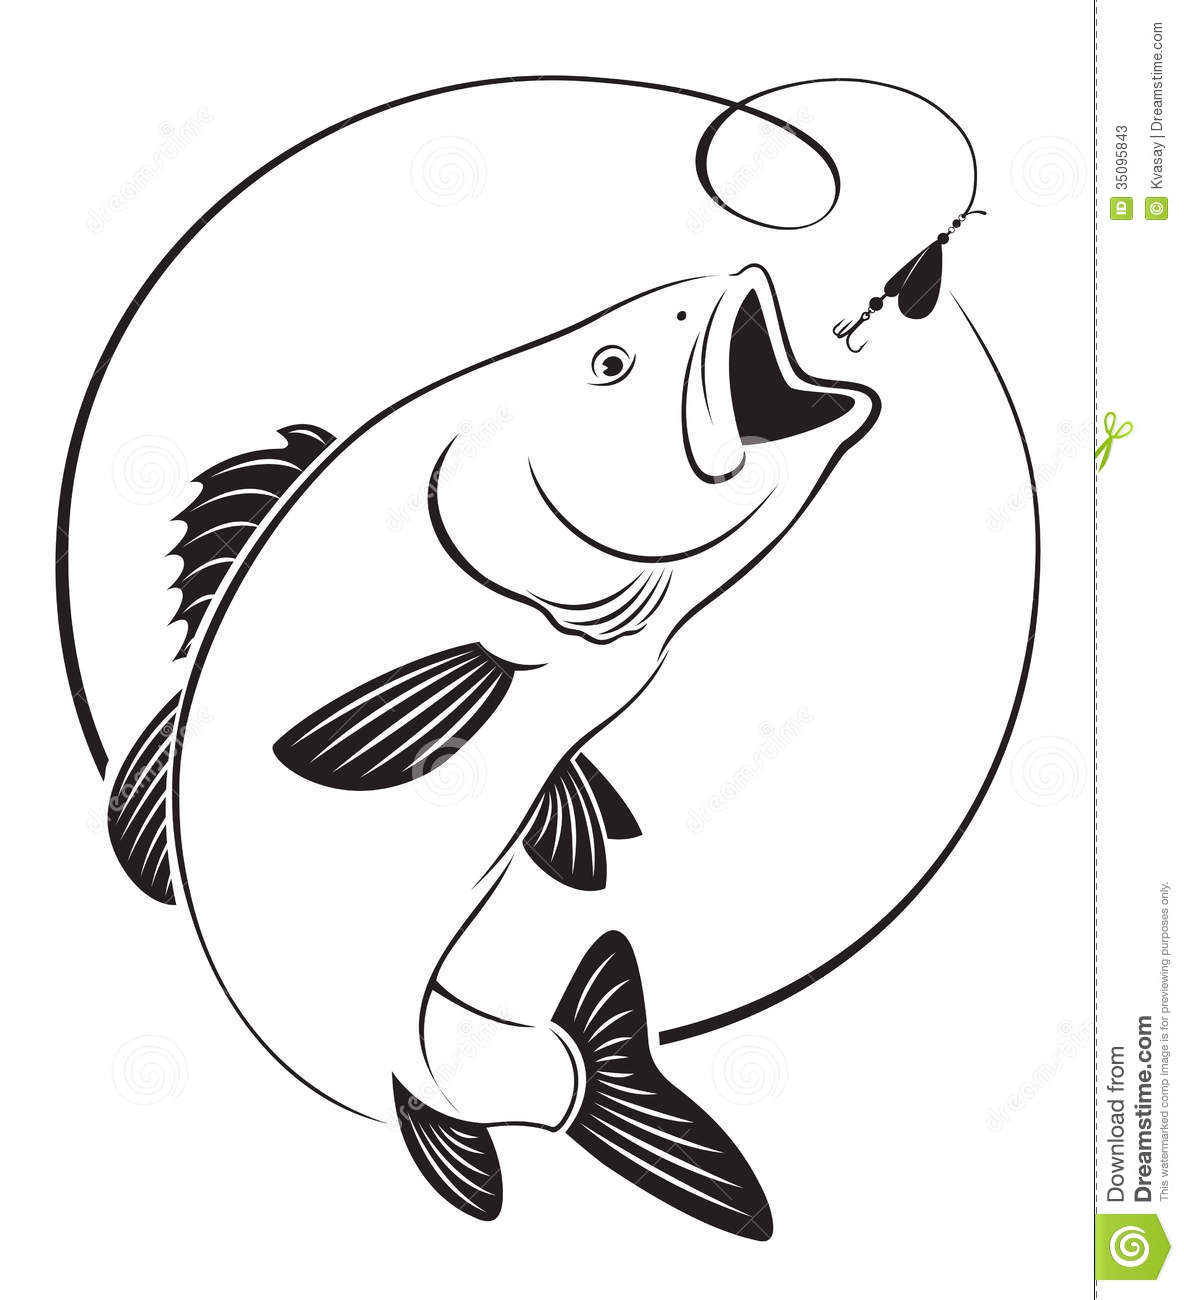 Fish bass. Fish bass. Bass Fi - Bass Fish Clip Art